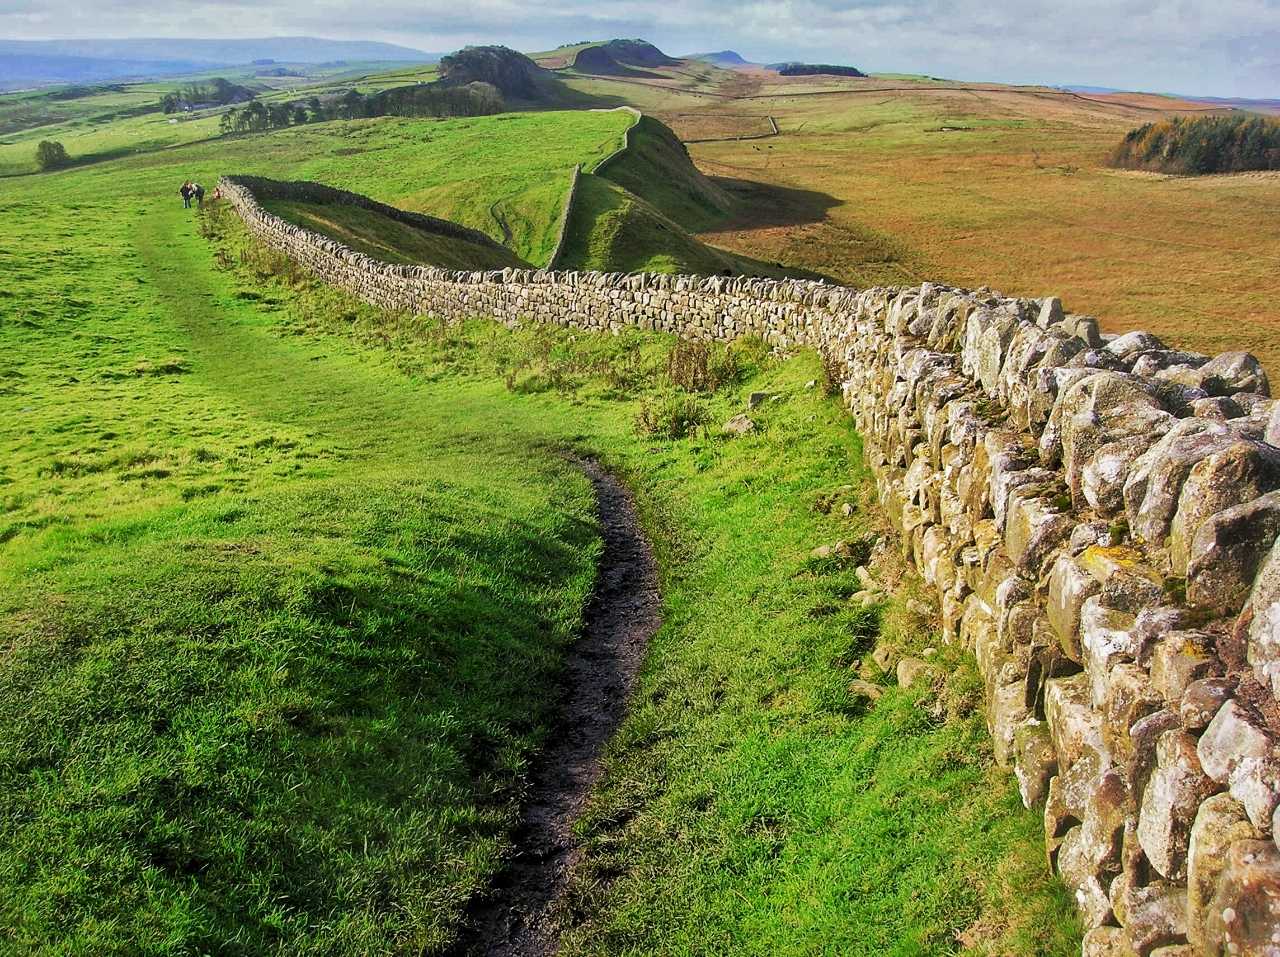 آثار قدیمہ کے منصوبے نے Hadrian's Wall 3 کے قریب رومن کندہ شدہ جواہرات کو دریافت کیا۔